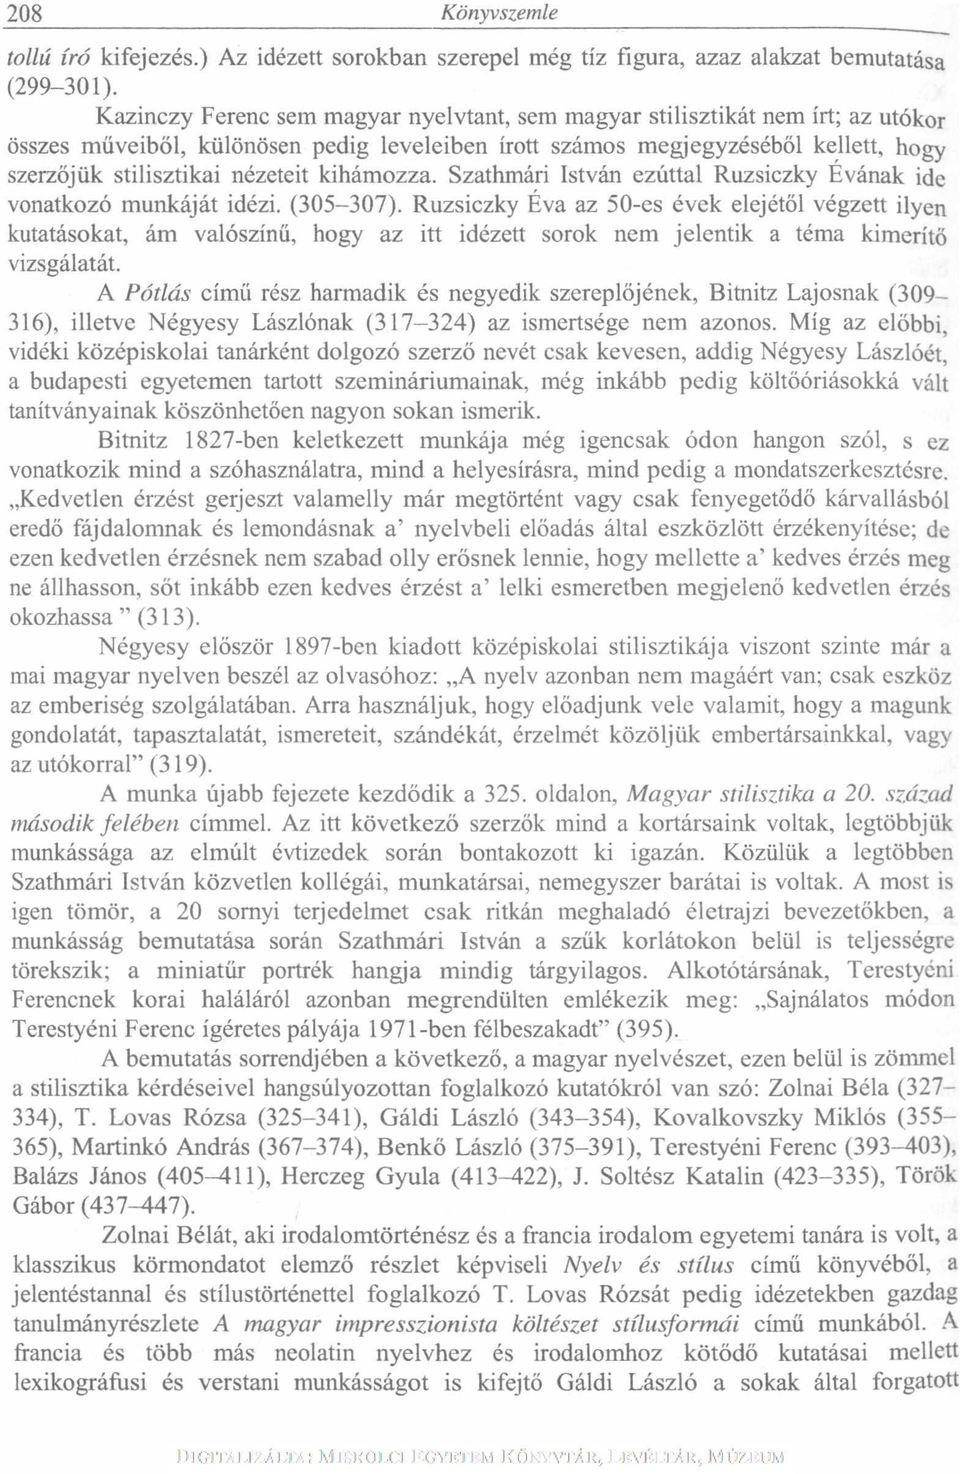 kihámozza. Szathmári István ezúttal Ruzsiczky Évának ide vonatkozó munkáját idézi. (305-307).